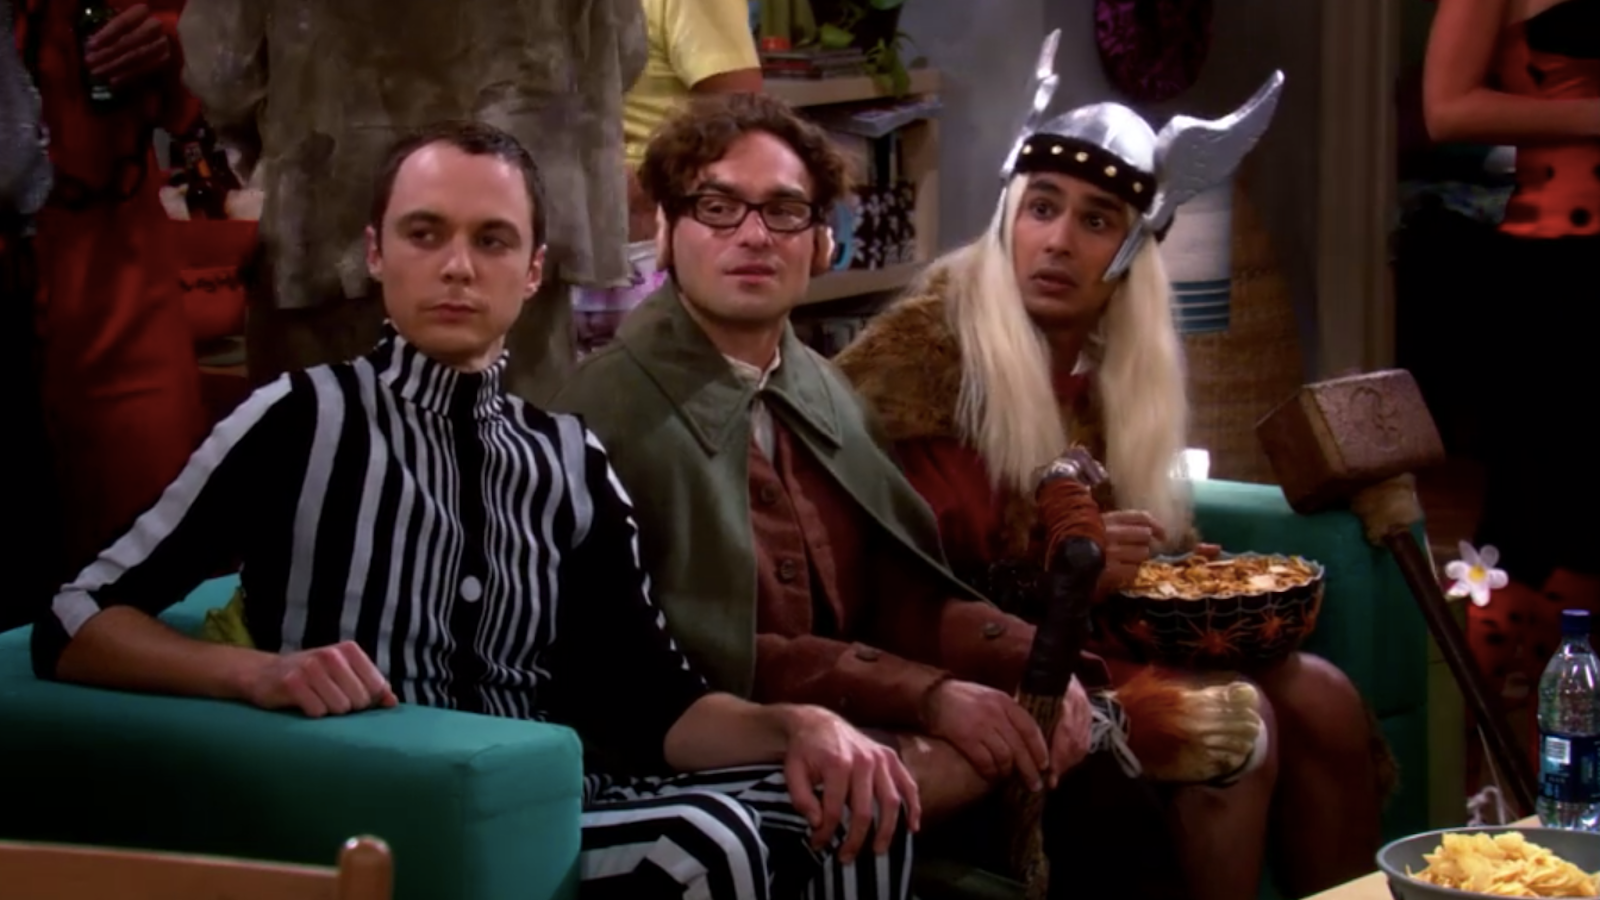 Série : The Big Bang Theory a-t-elle déringardisé la culture geek ?